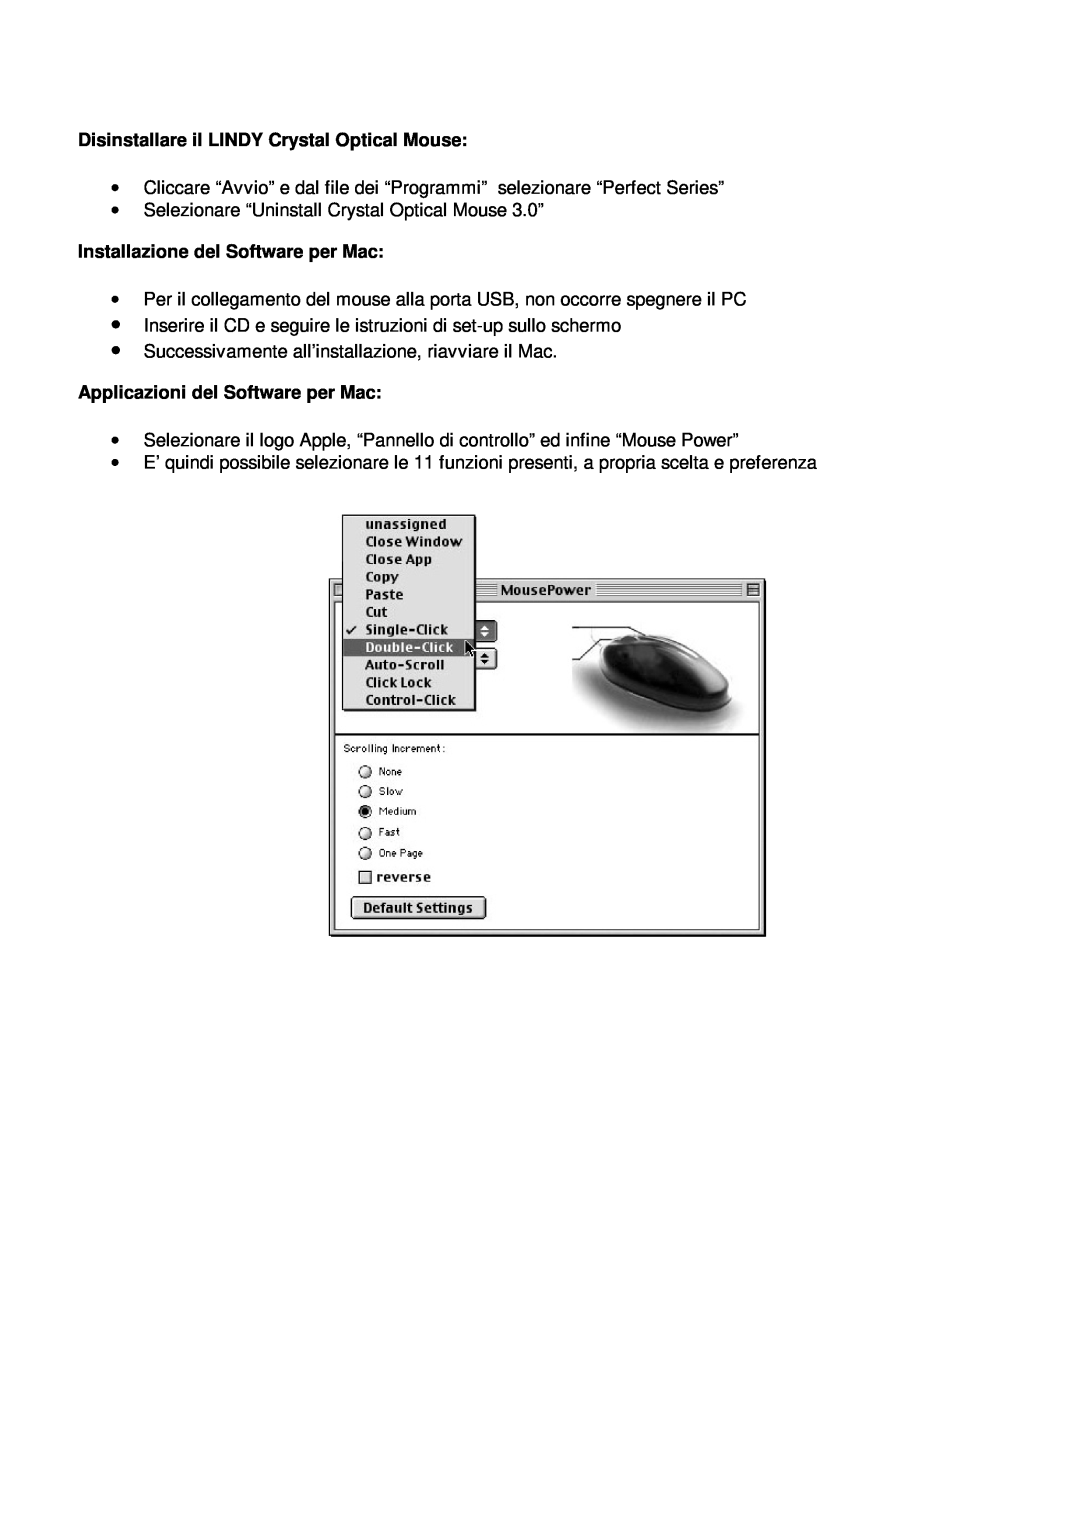 Lindy 20599 manual Disinstallare il LINDY Crystal Optical Mouse, Installazione del Software per Mac 